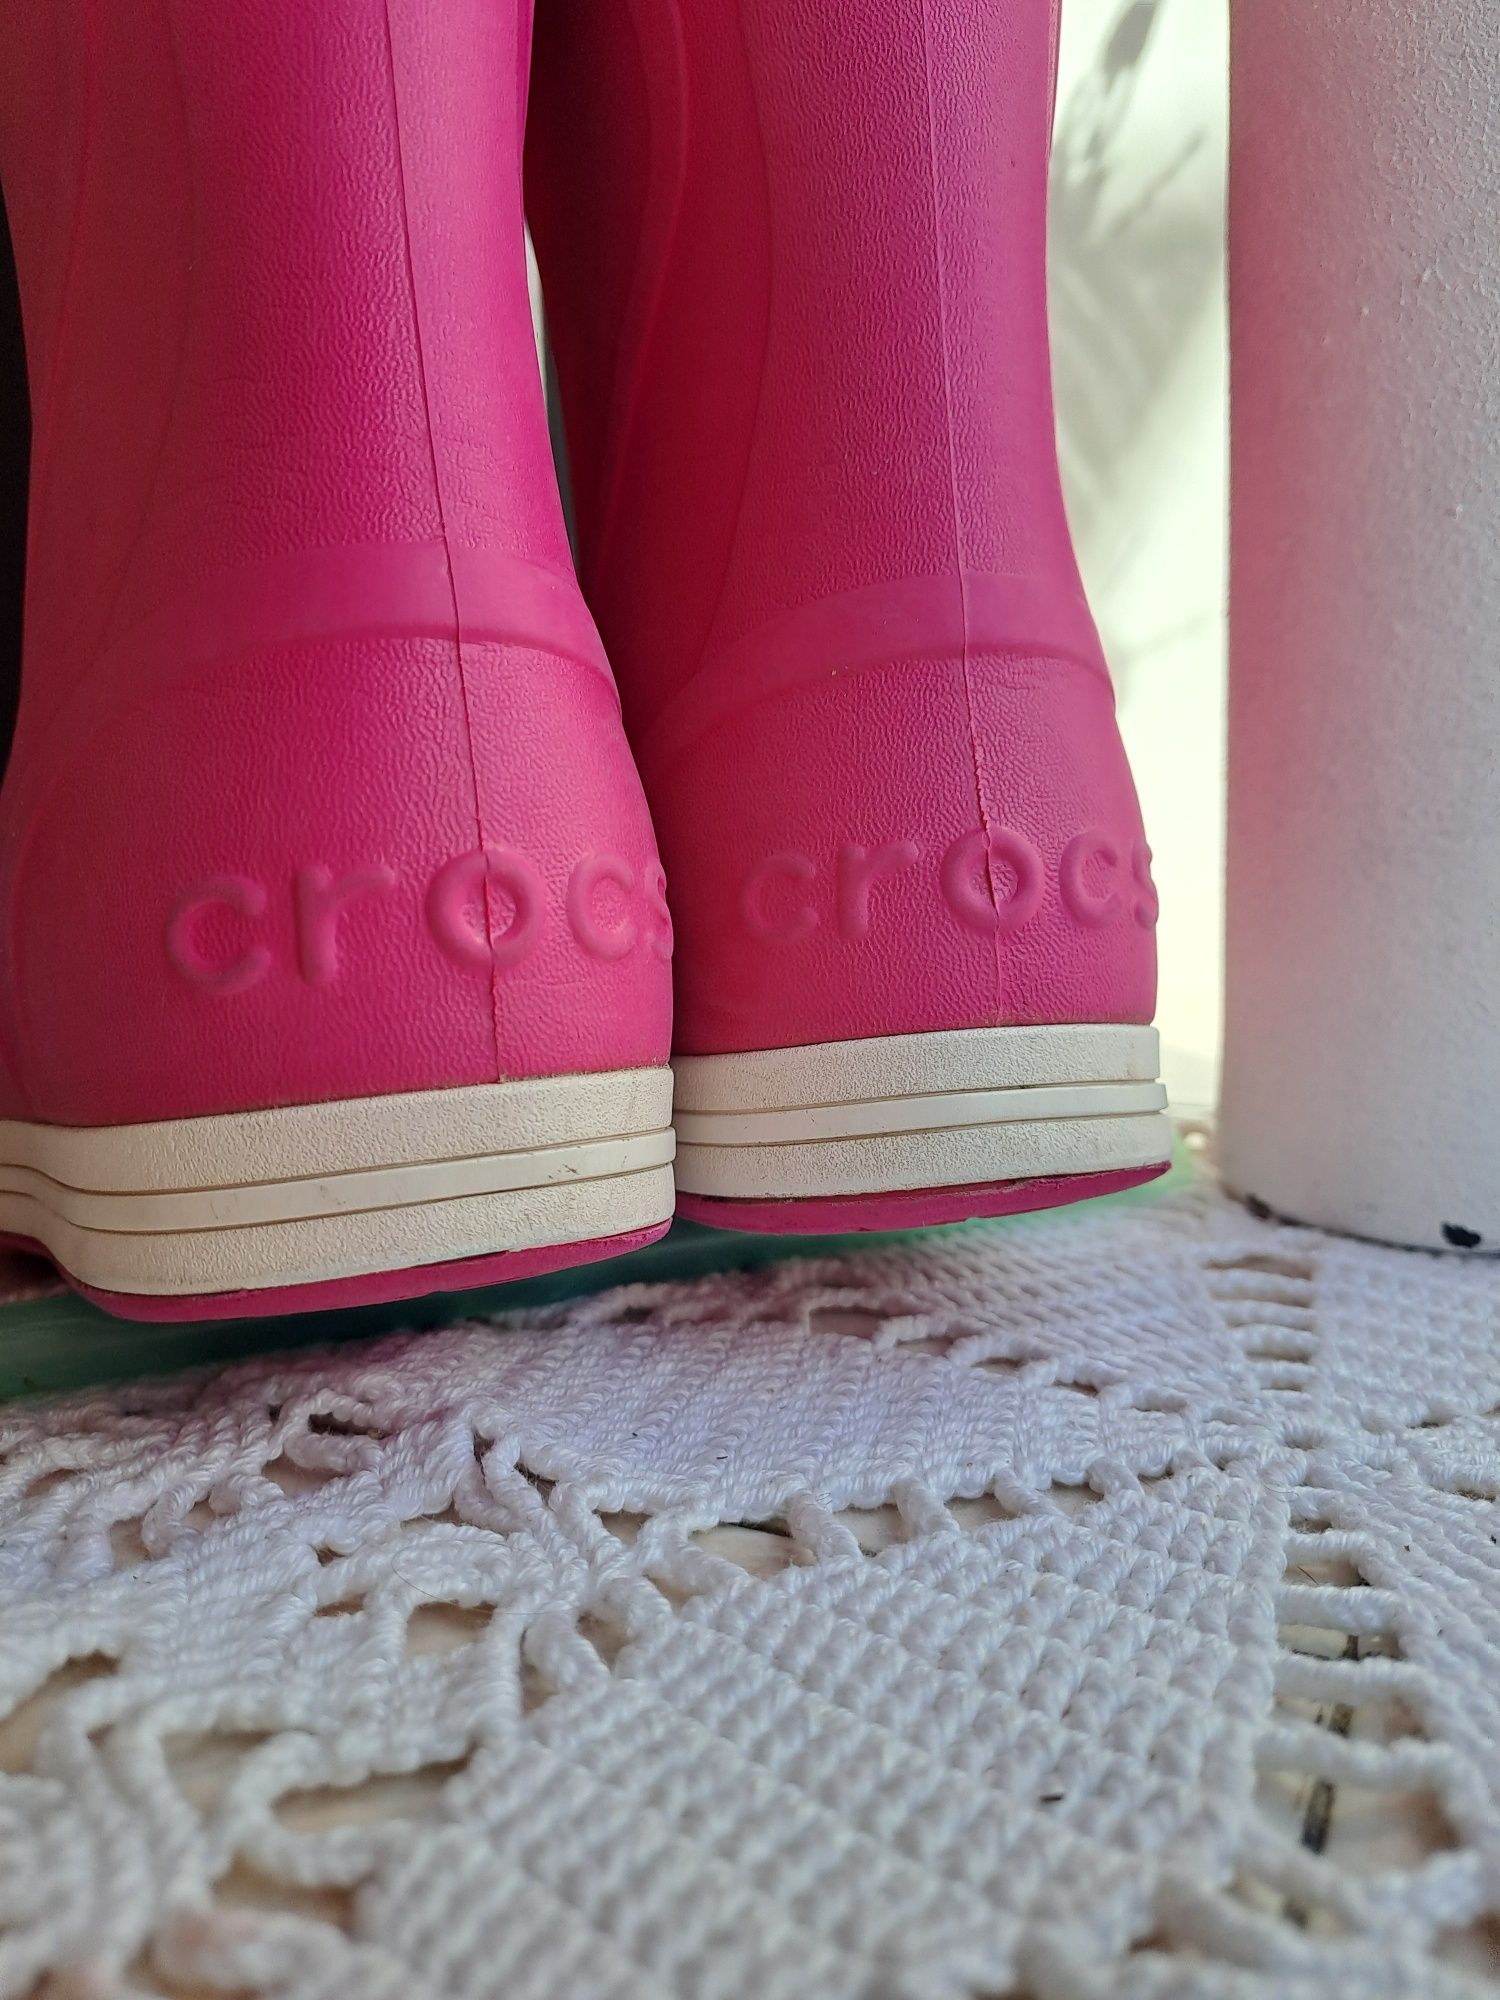 Сапоги резиновые чоботи Крокси Кроксы Crocs  s 10 26 27 16.6 см